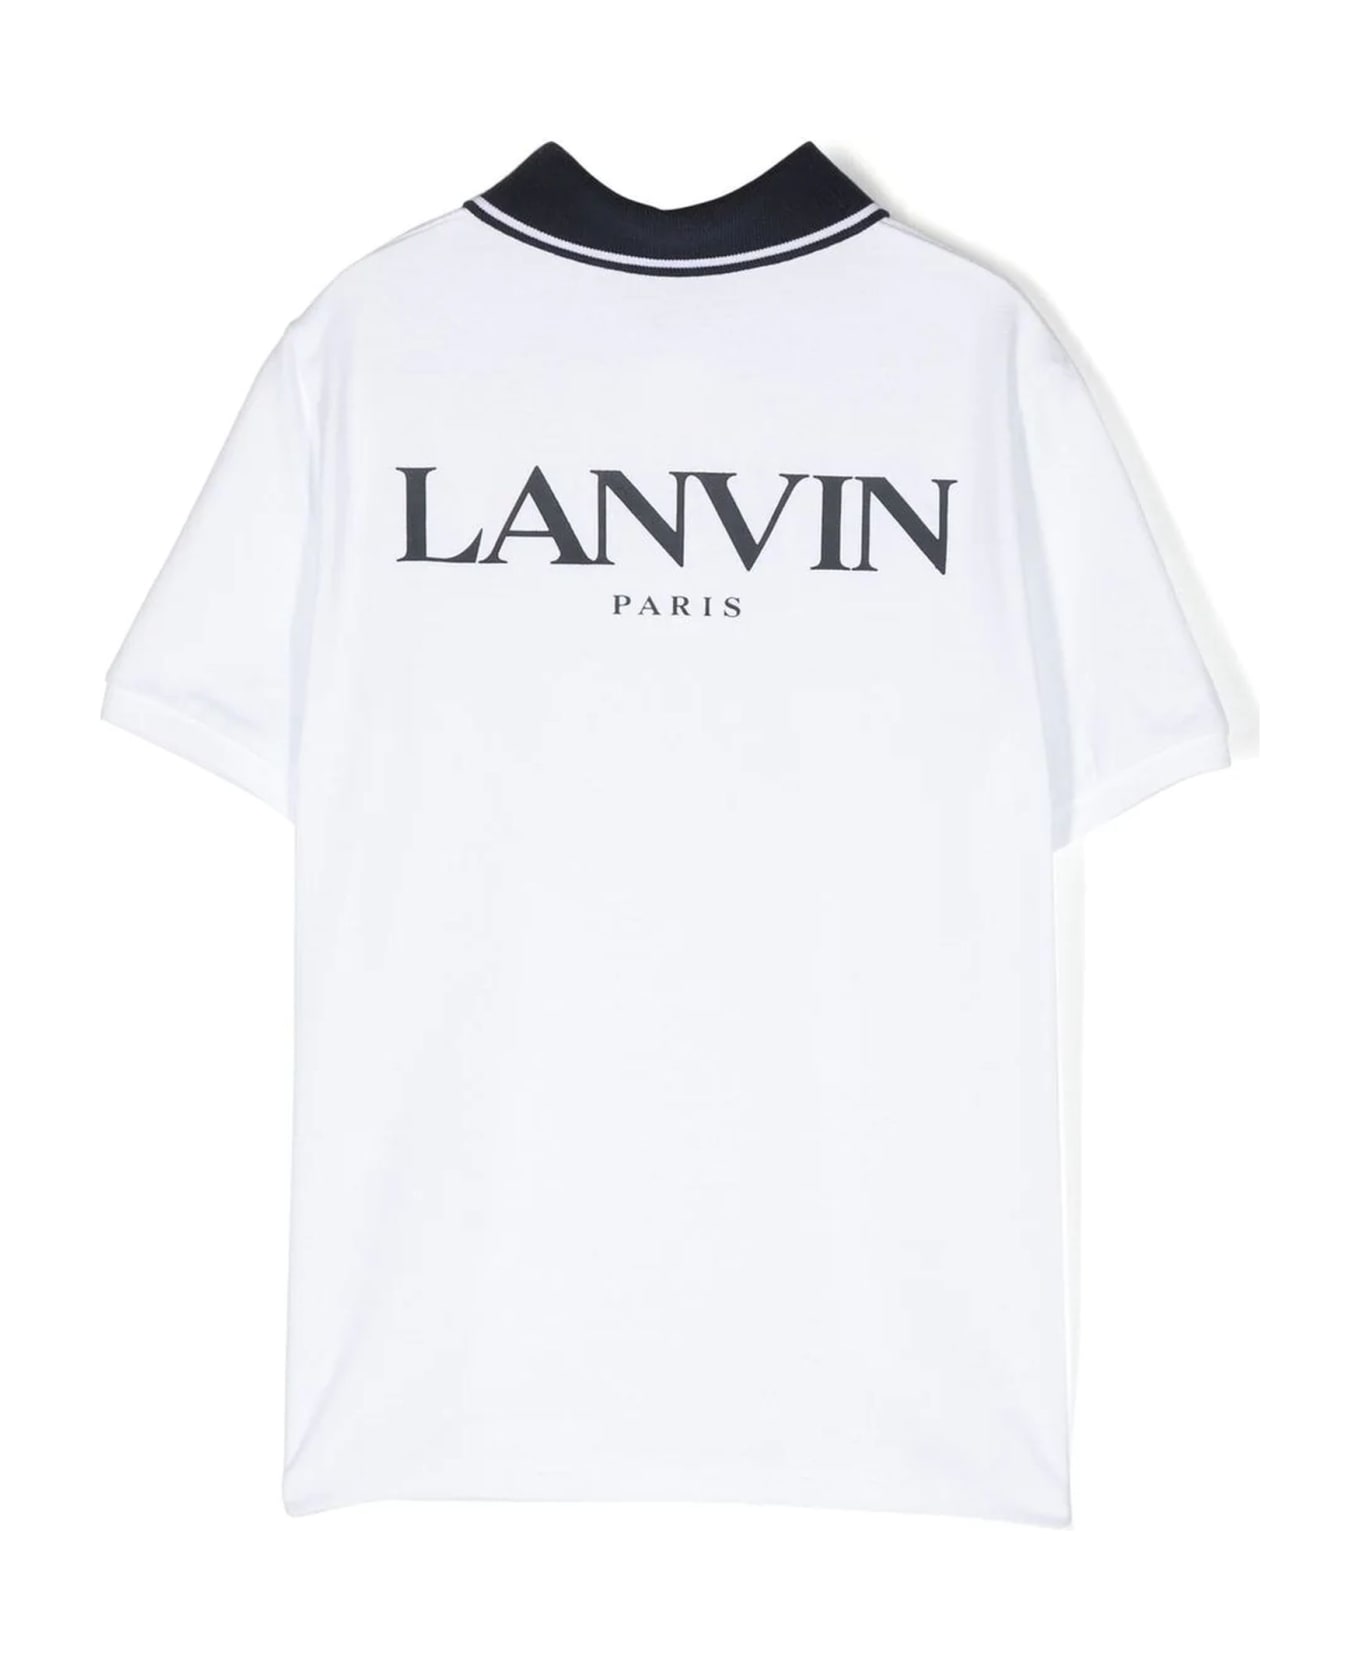 Lanvin White Cotton Polo Dress Shirt - Bianco